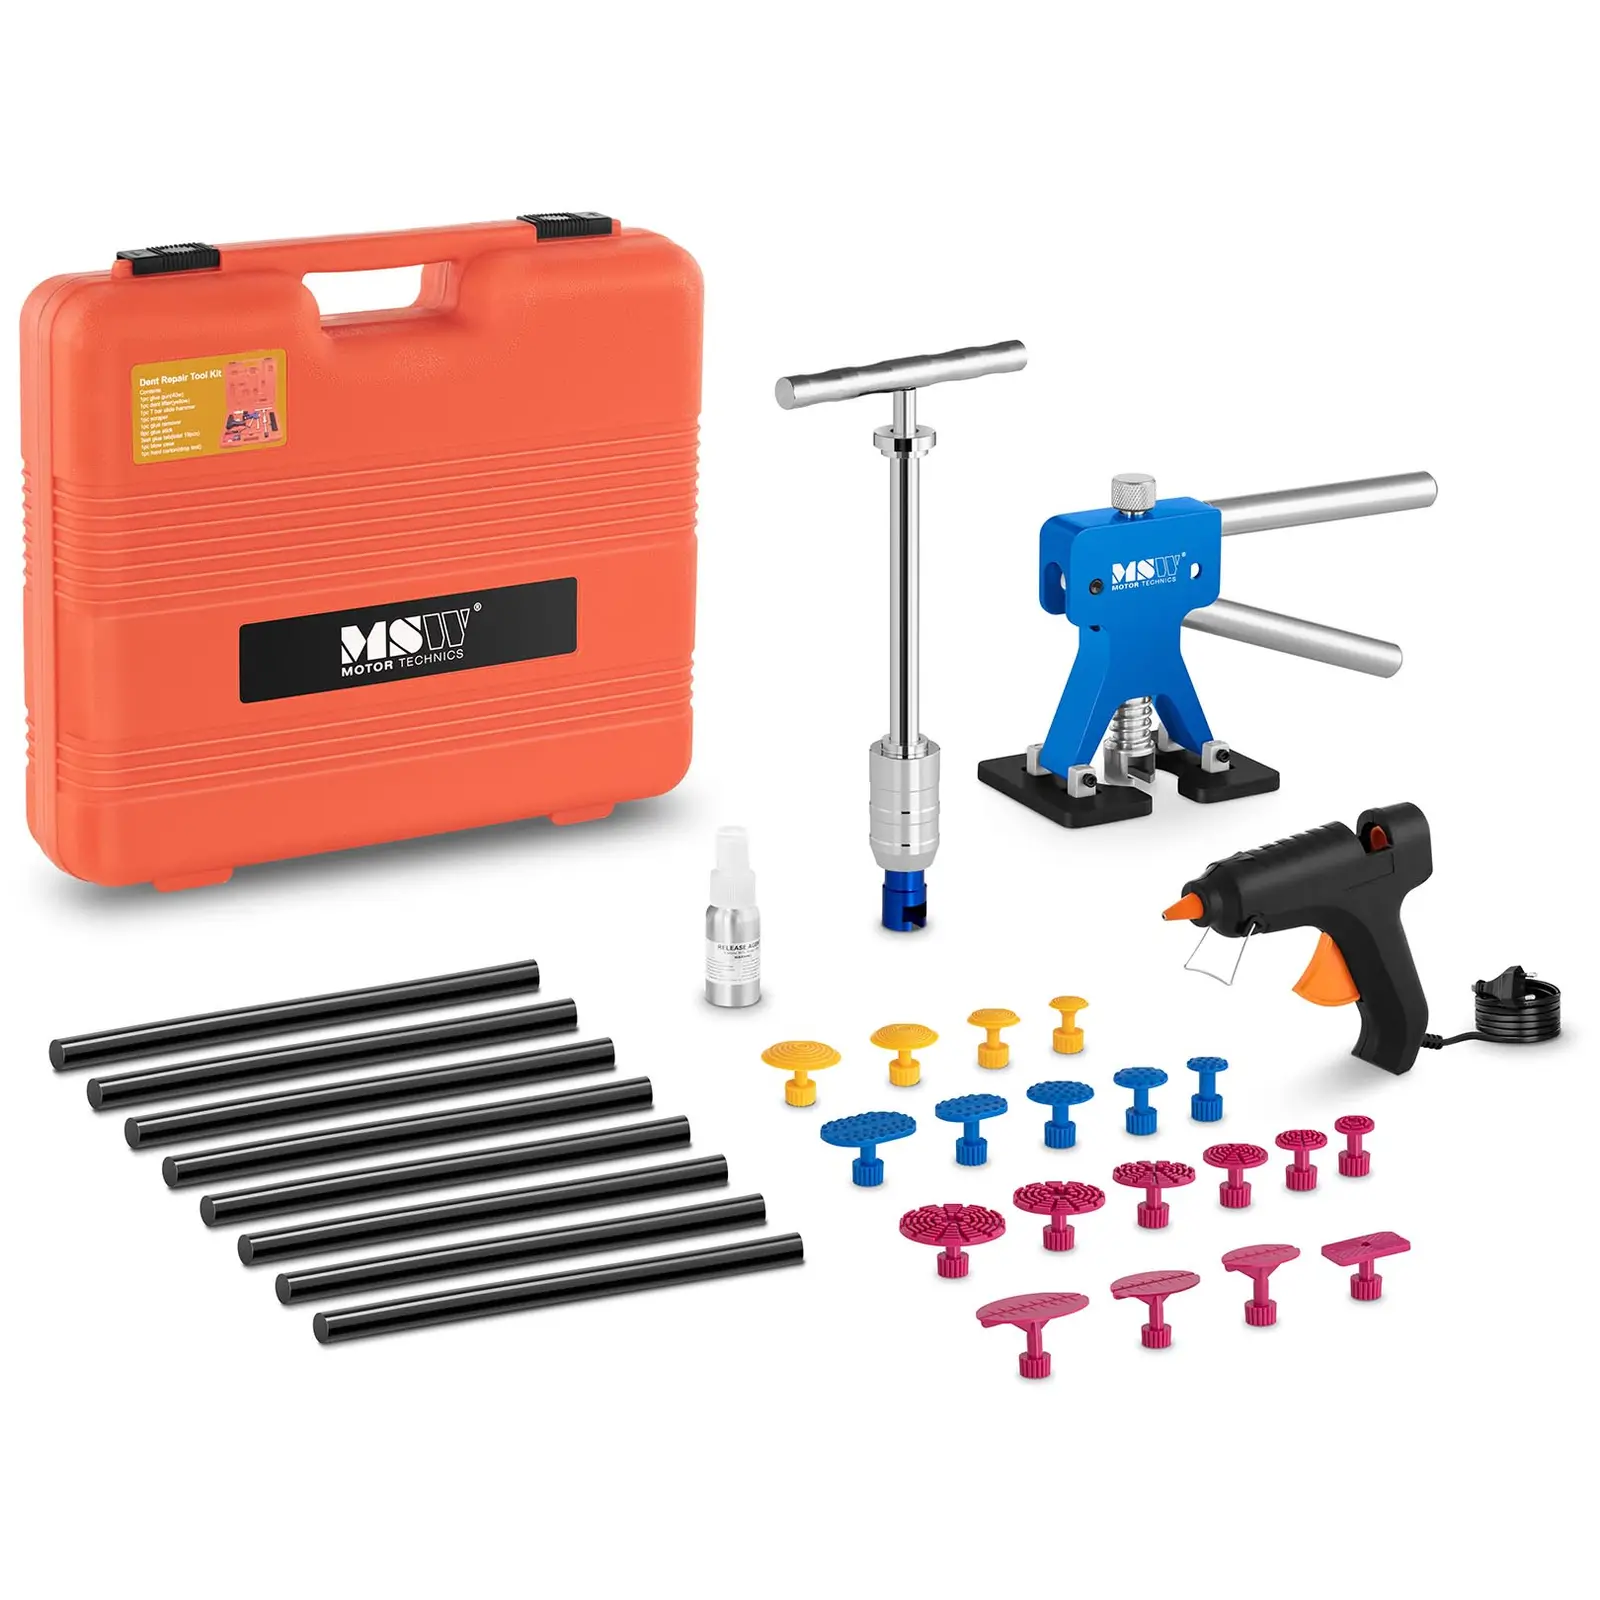 Kit de herramientas para reparar abolladuras - 33 piezas